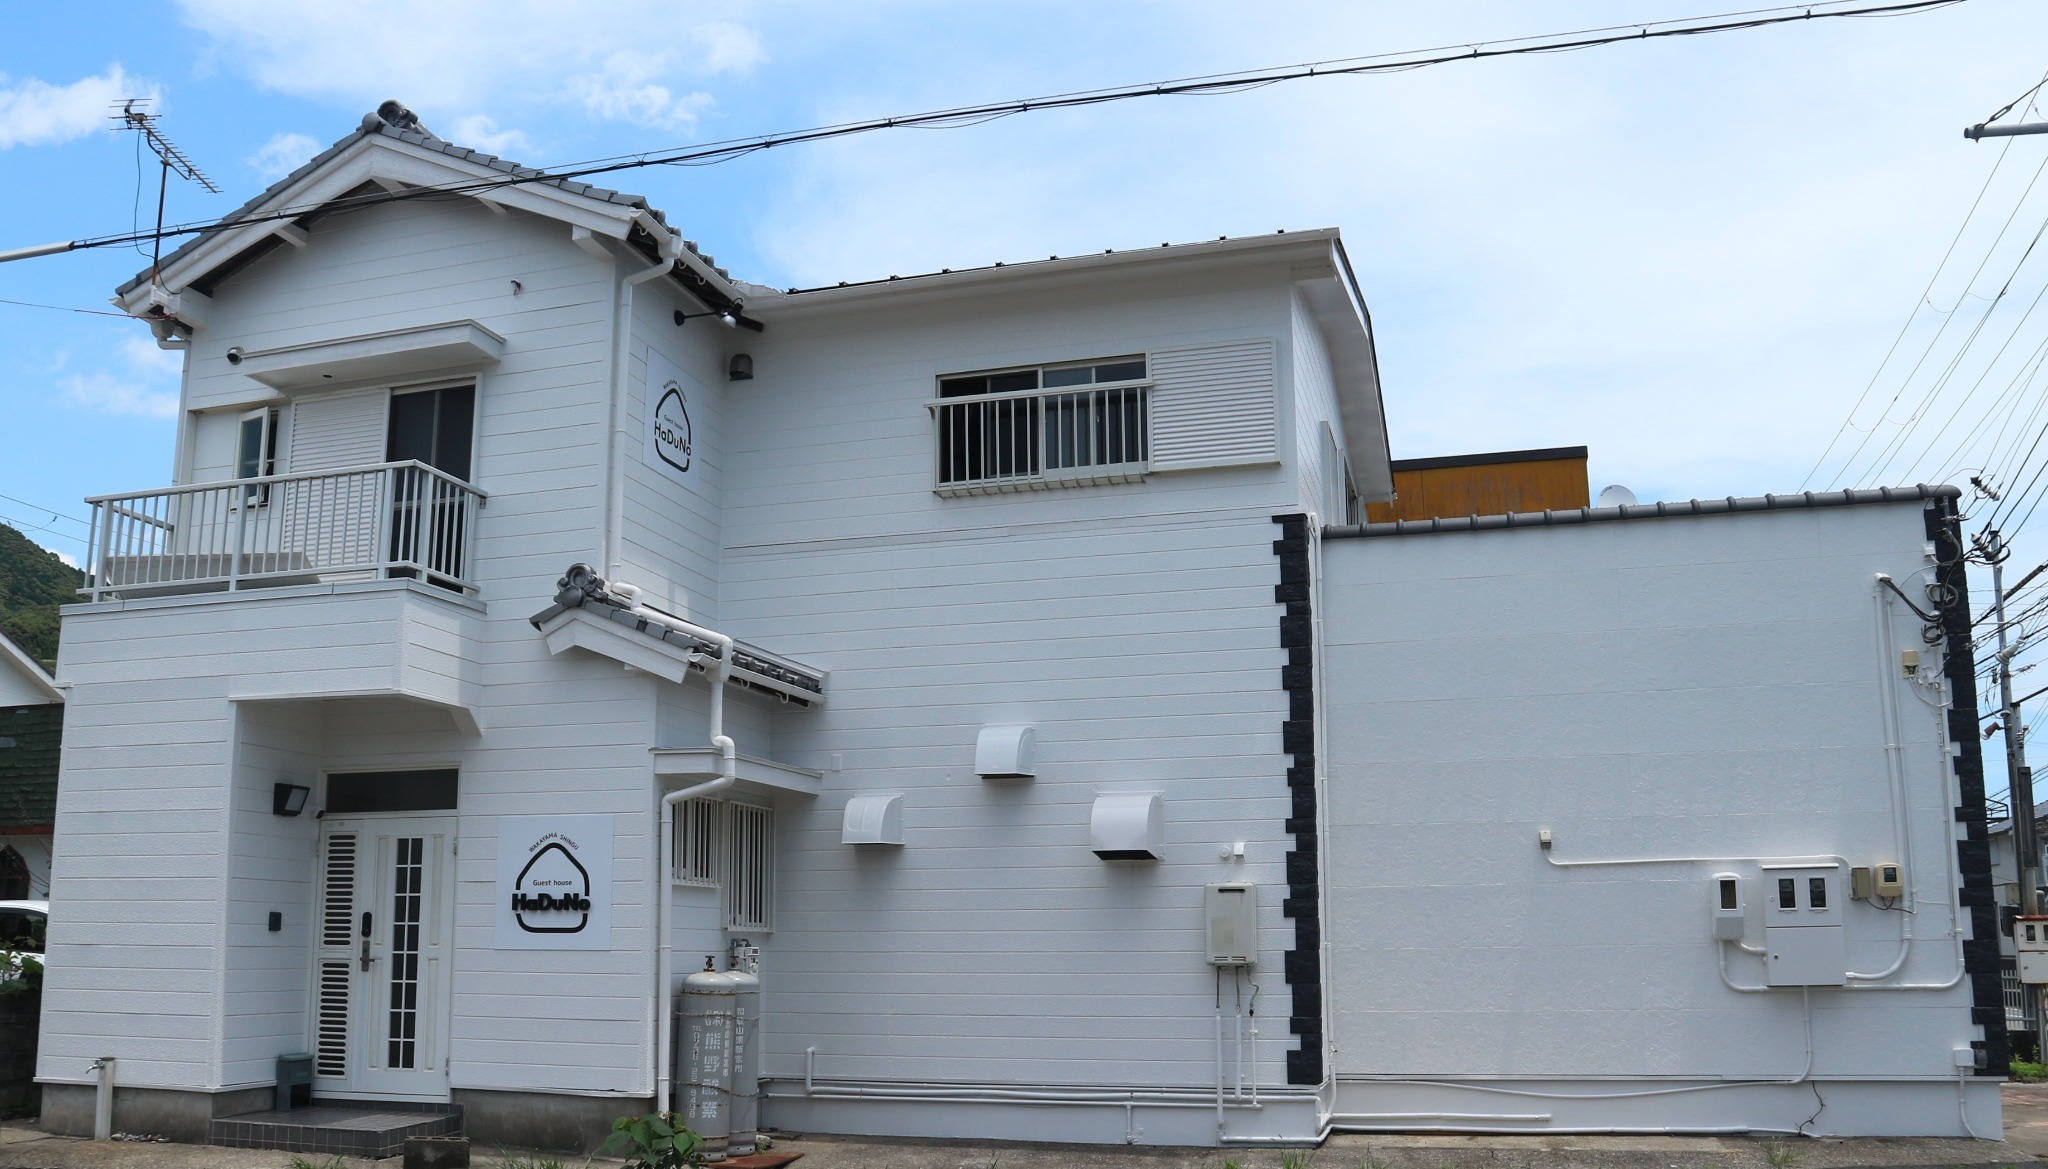 世界遺産の熊野速玉大社、熊野那智大社に程近い、広いLDKとバルコニーがある1組限定の宿泊施設です。